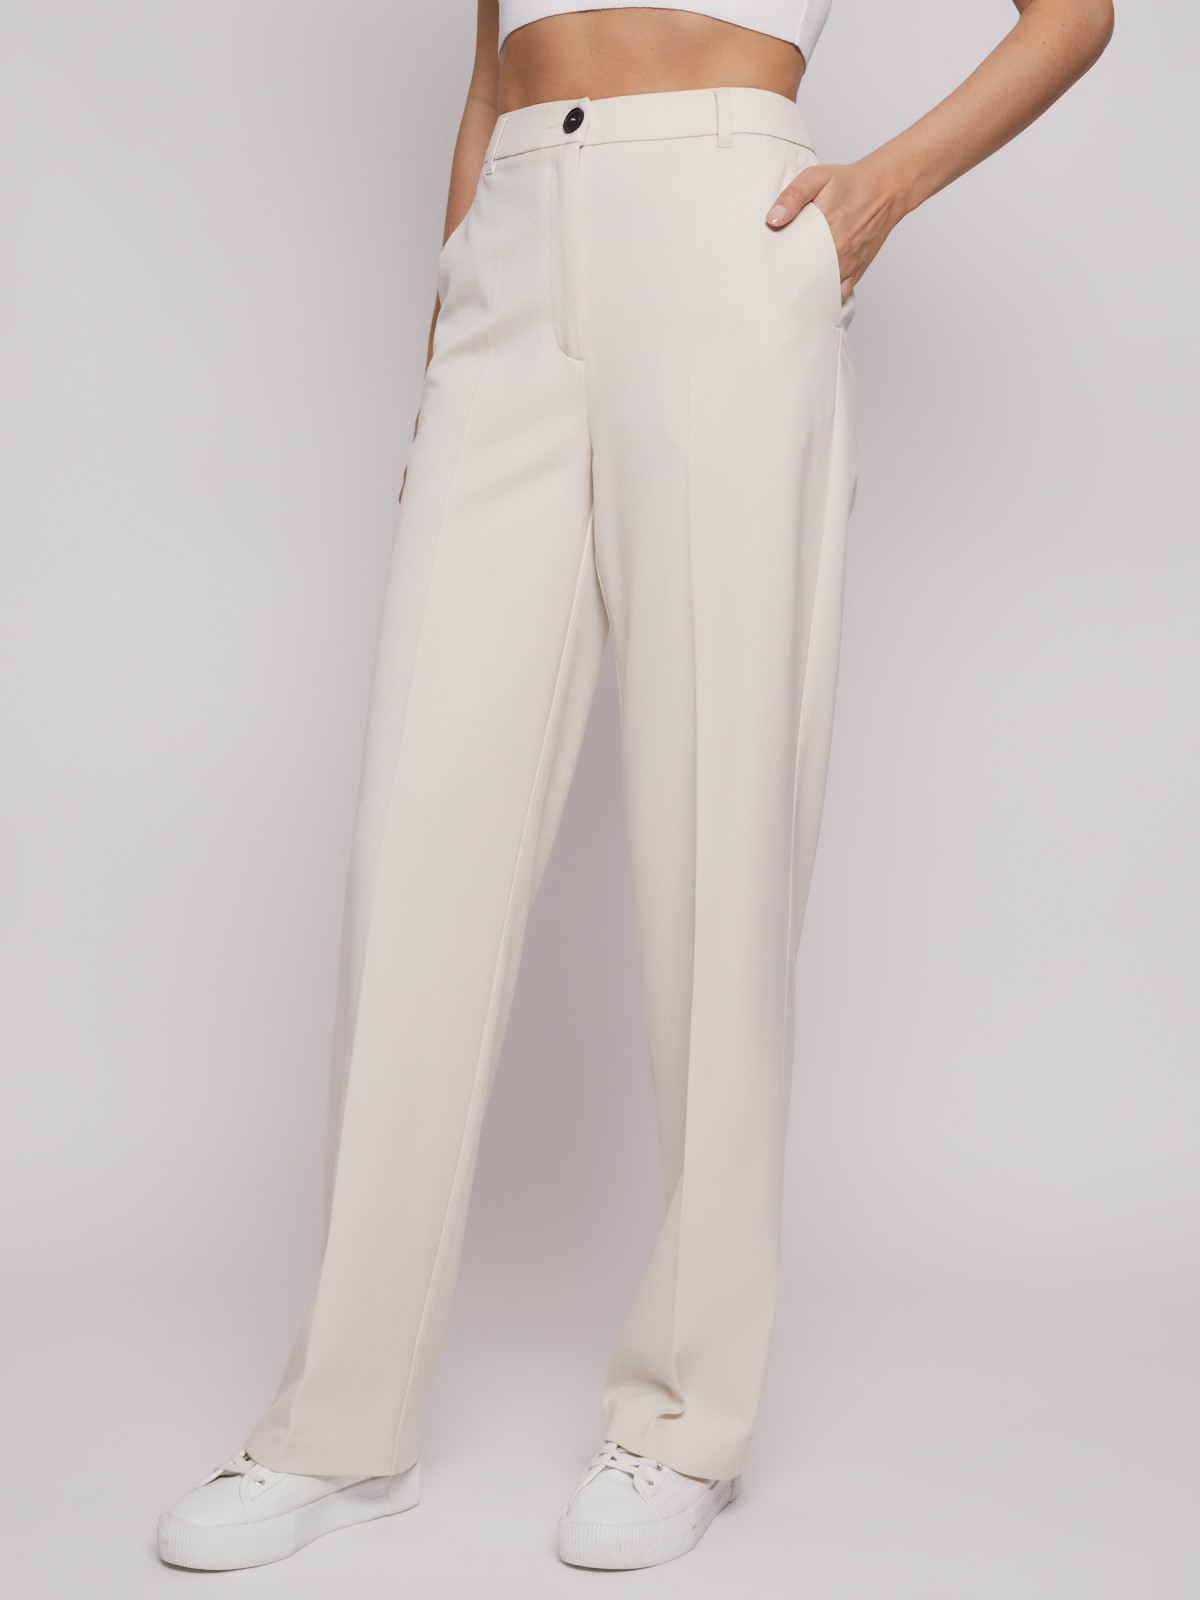 Прямые брюки со стрелками zolla 022217366131, цвет молоко, размер XS - фото 5